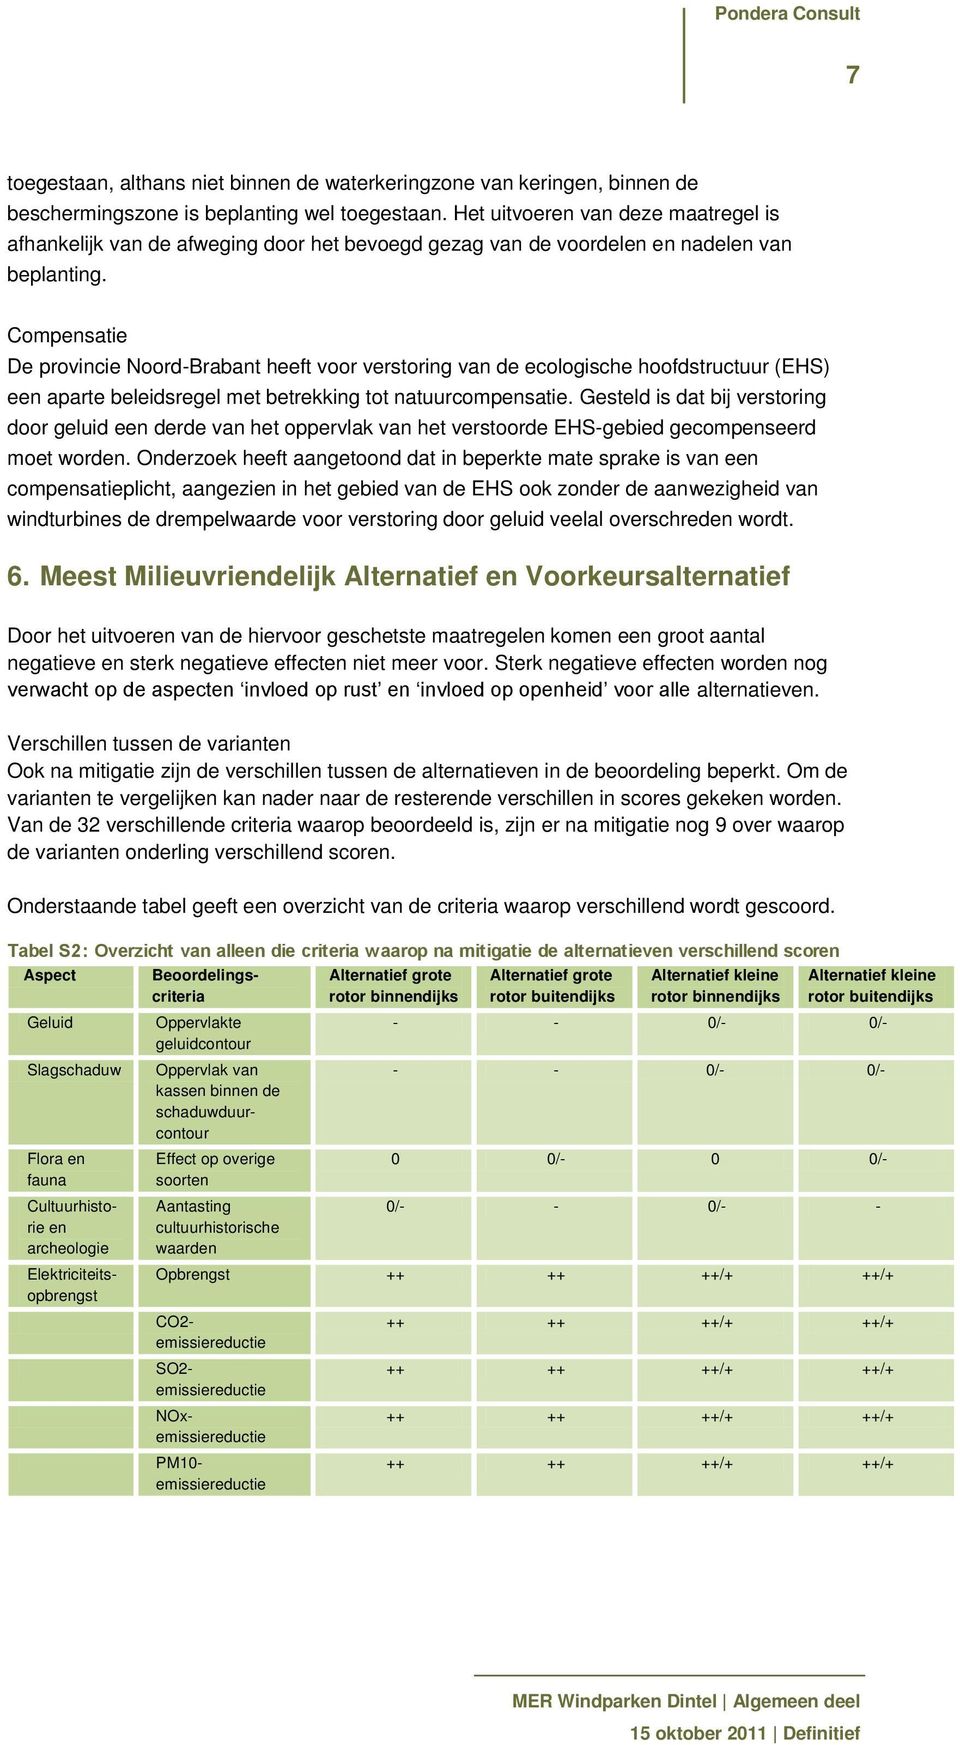 Compensatie De provincie Noord-Brabant heeft voor verstoring van de ecologische hoofdstructuur (EHS) een aparte beleidsregel met betrekking tot natuurcompensatie.